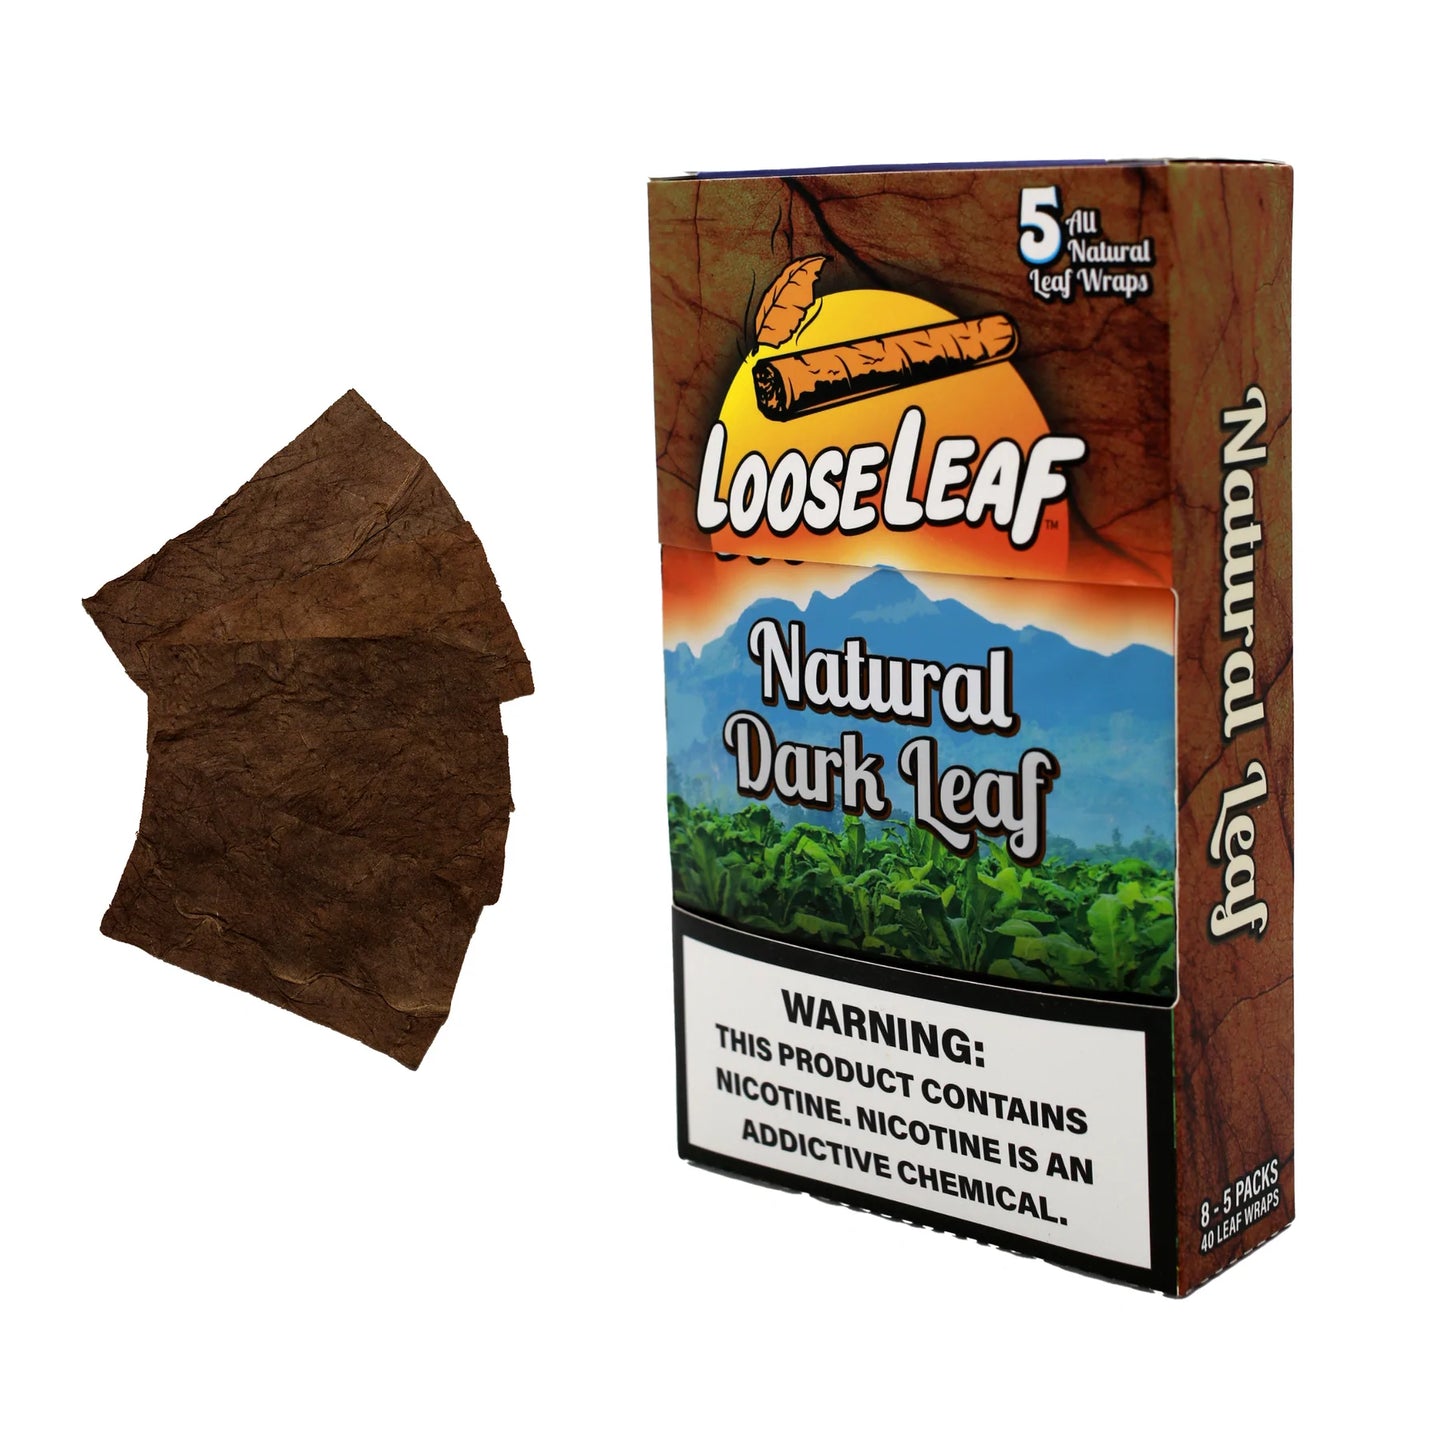 LOOSE LEAF Natural Leaf Wraps